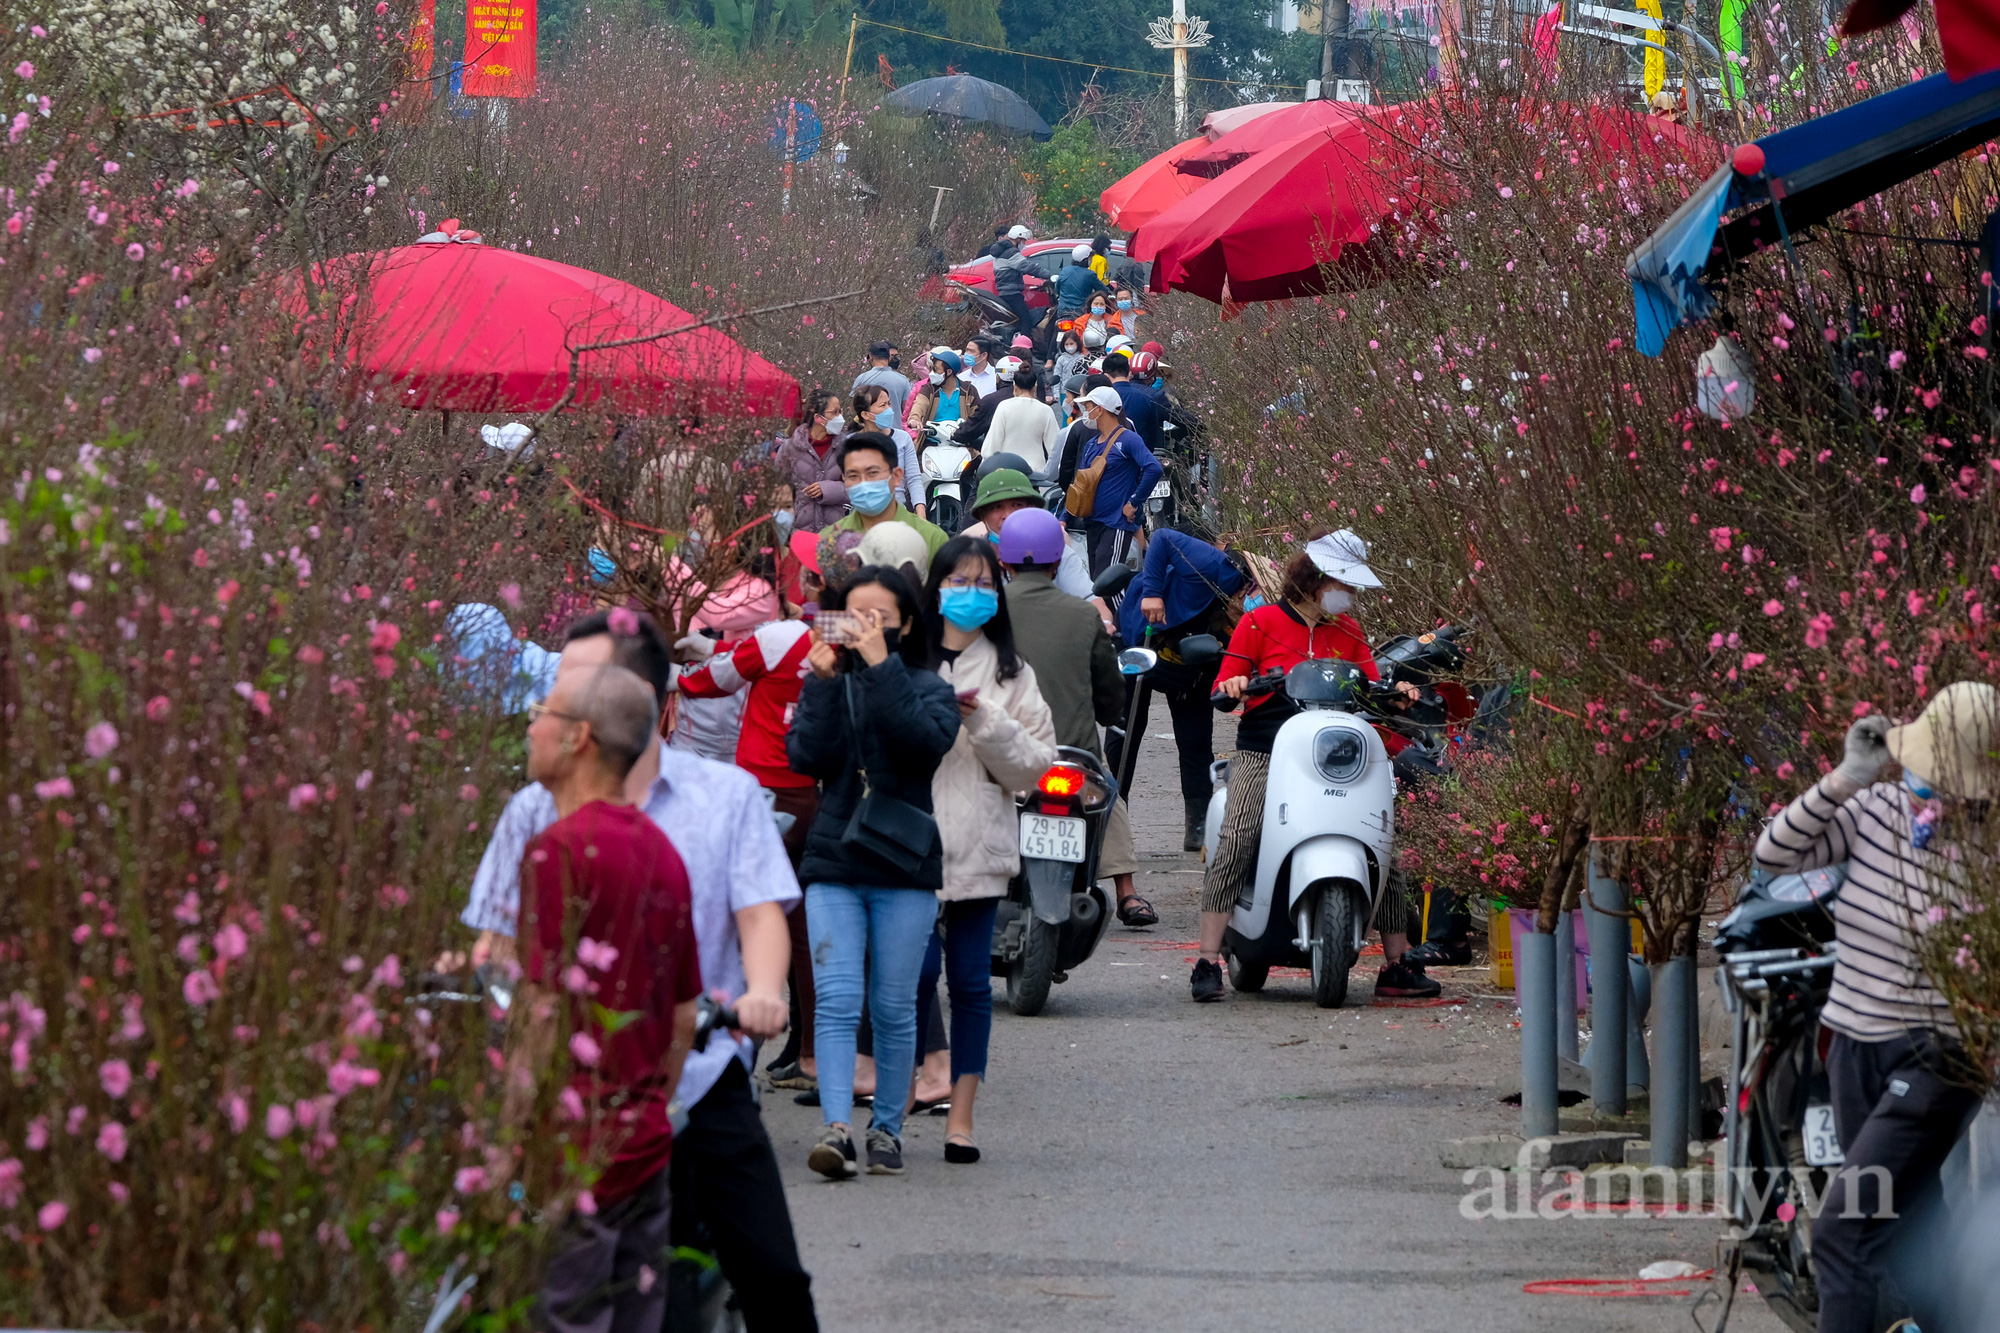 29 Tết đi chợ hoa Quảng Bá: Giá hoa tăng 20% so với ngày thường, mua nhanh 5 cành đào đông cắm đẹp nhà mà hết 2,2 triệu - Ảnh 2.